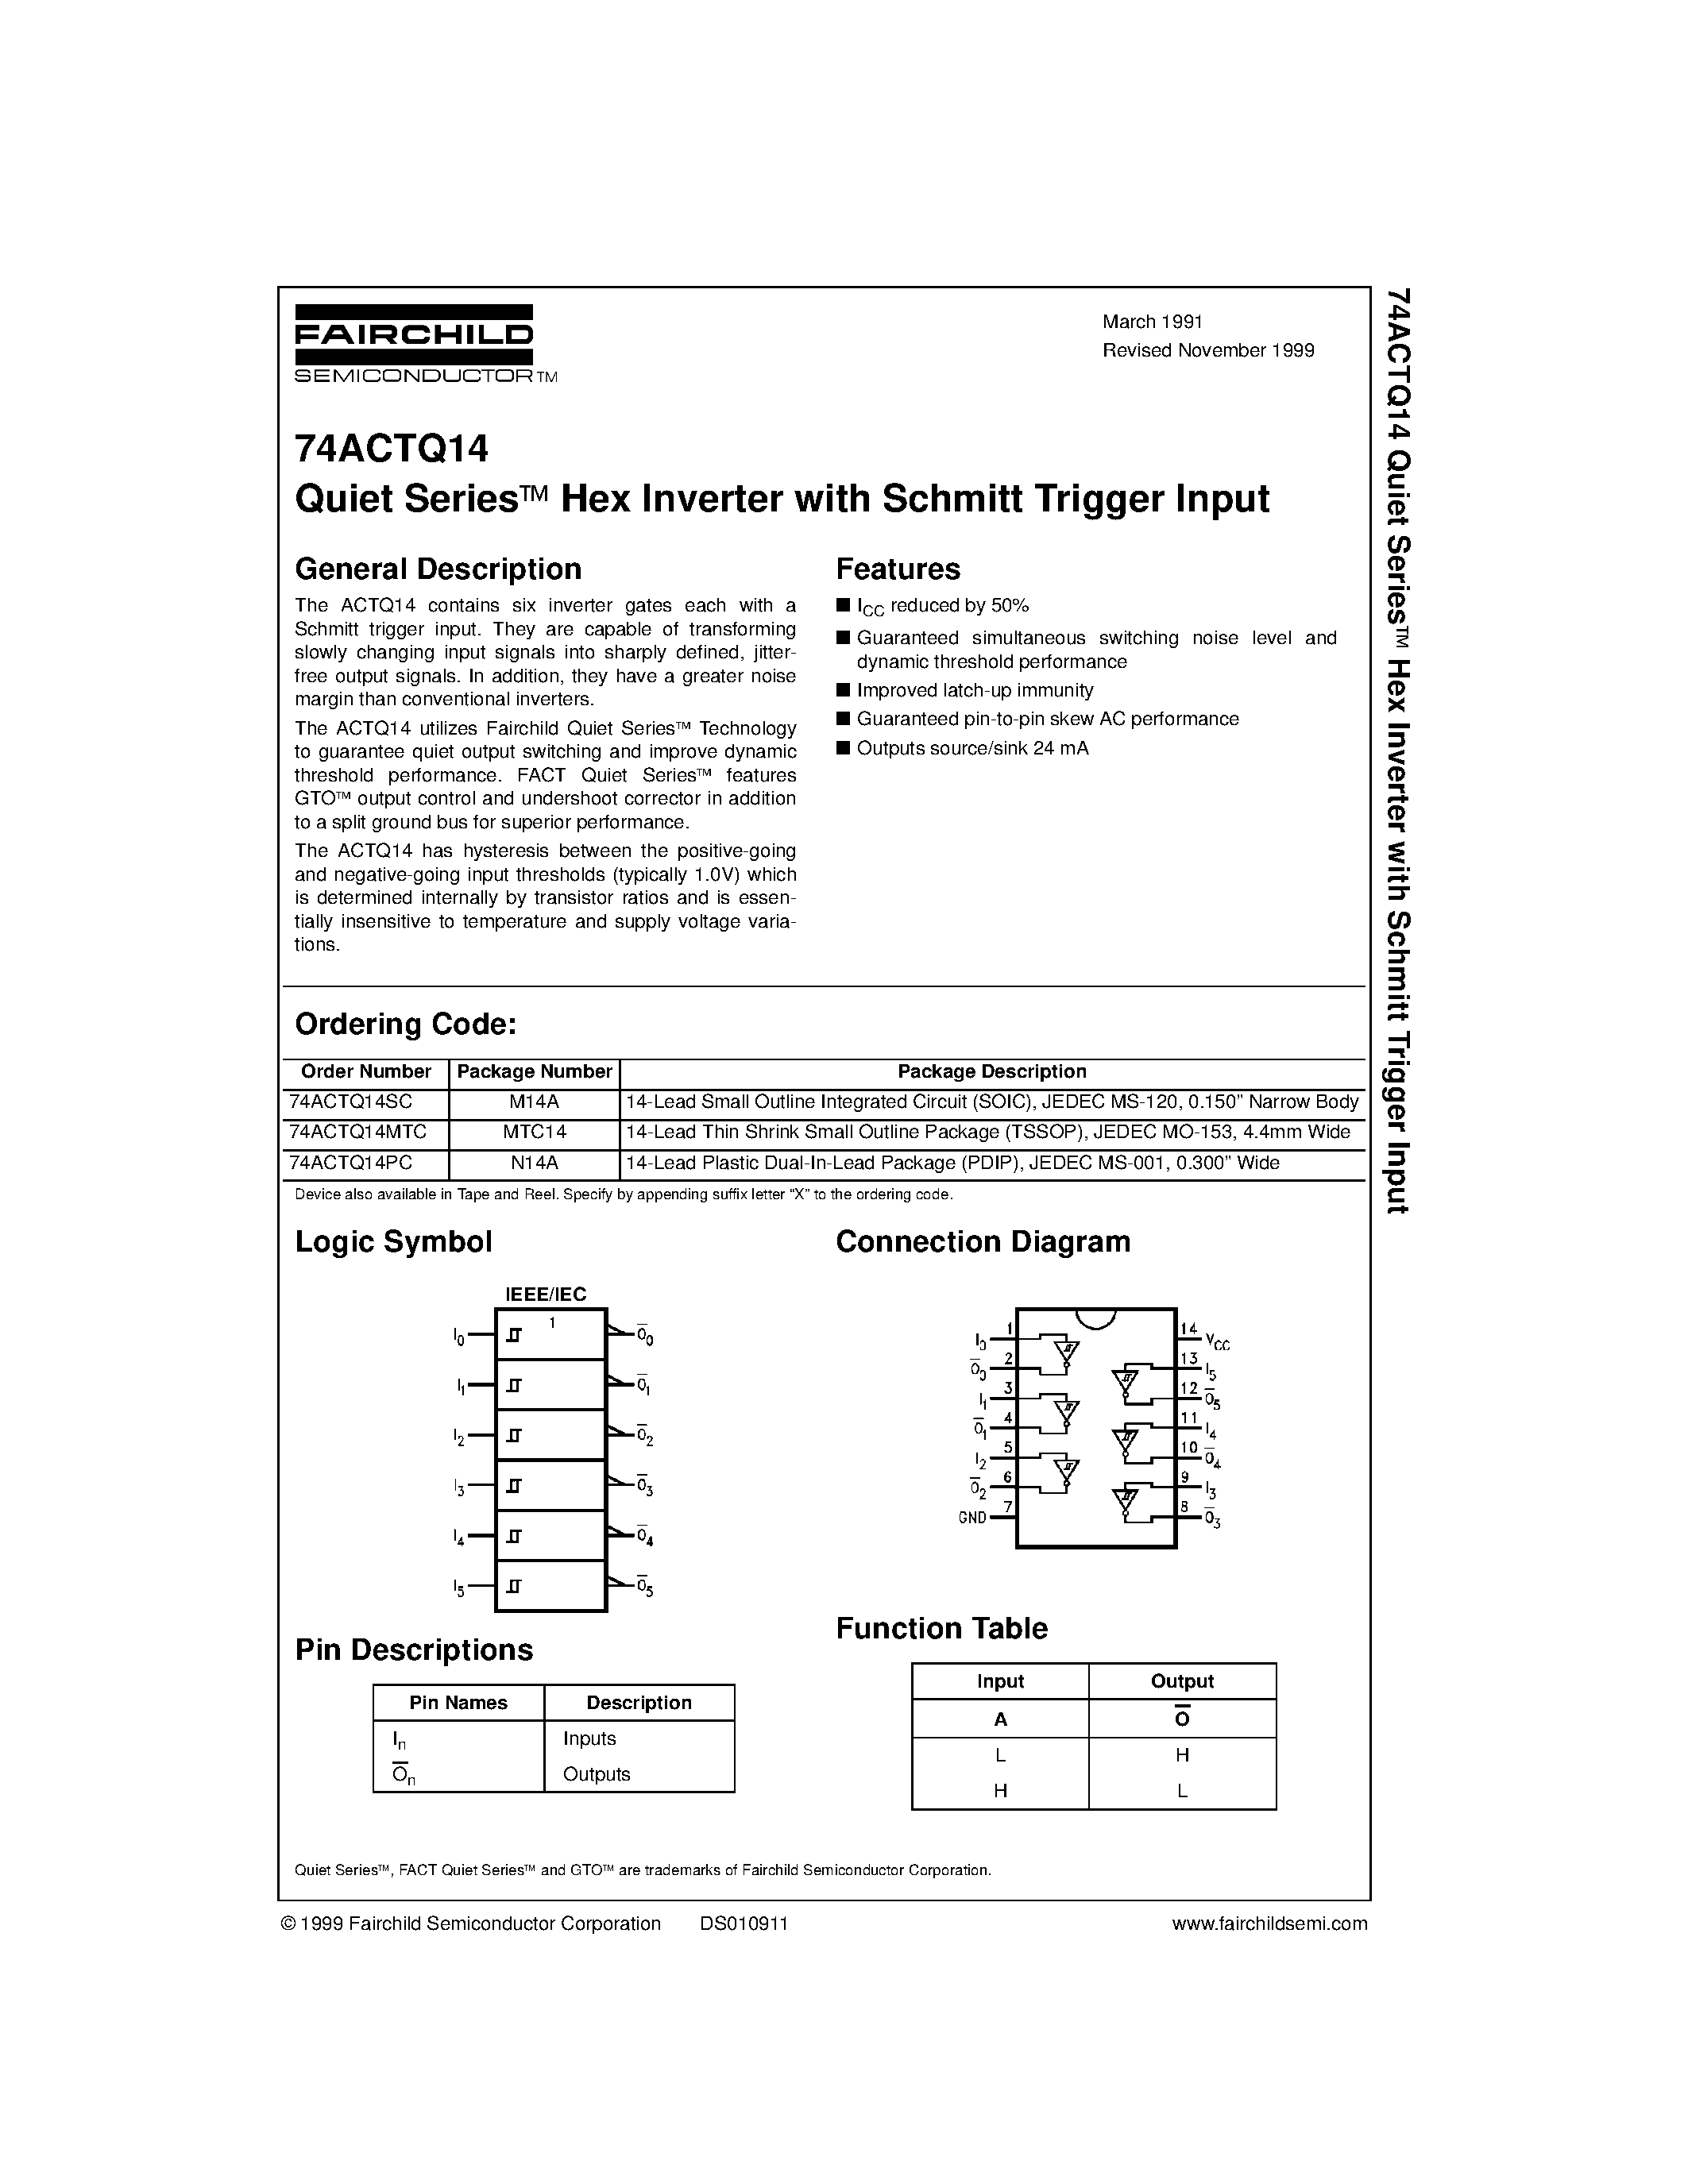 Datasheet 74ACTQ14 - Quiet Series Hex Inverter with Schmitt Trigger Input page 1